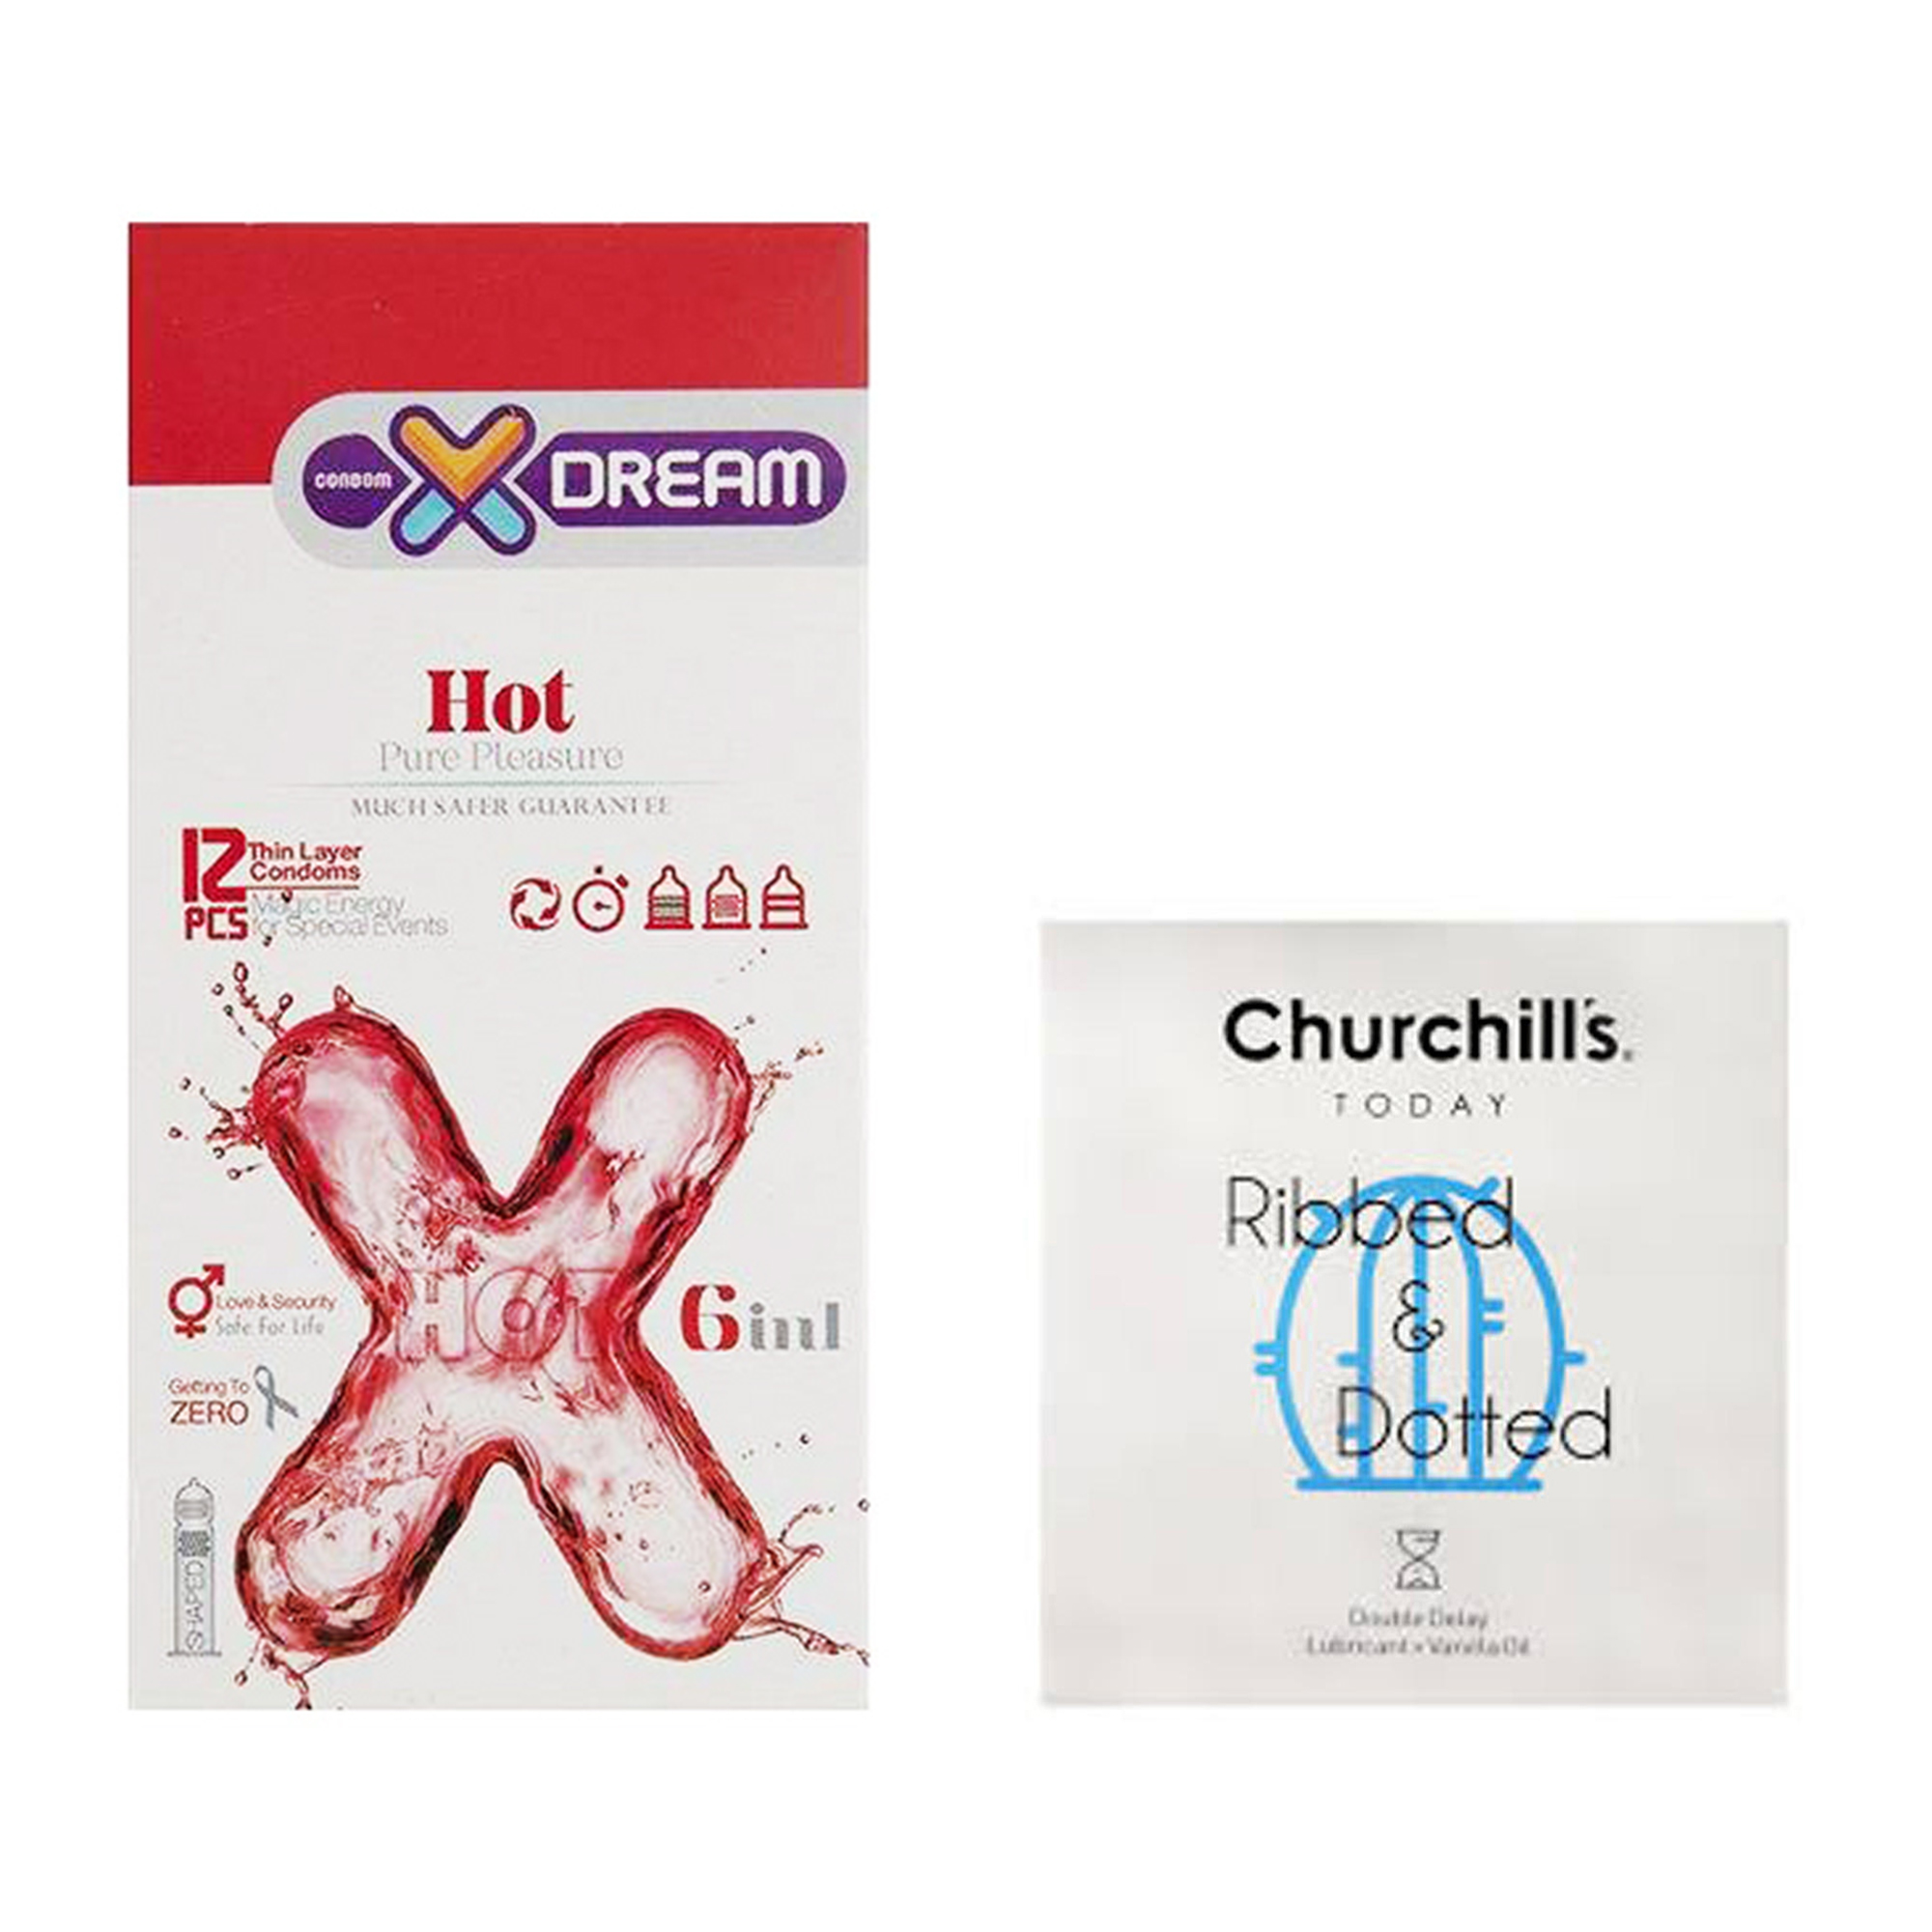 کاندوم چرچیلز مدل Ribbed and Dotted بسته 3 عددی به همراه کاندوم ایکس دریم مدل Hot بسته 12 عددی